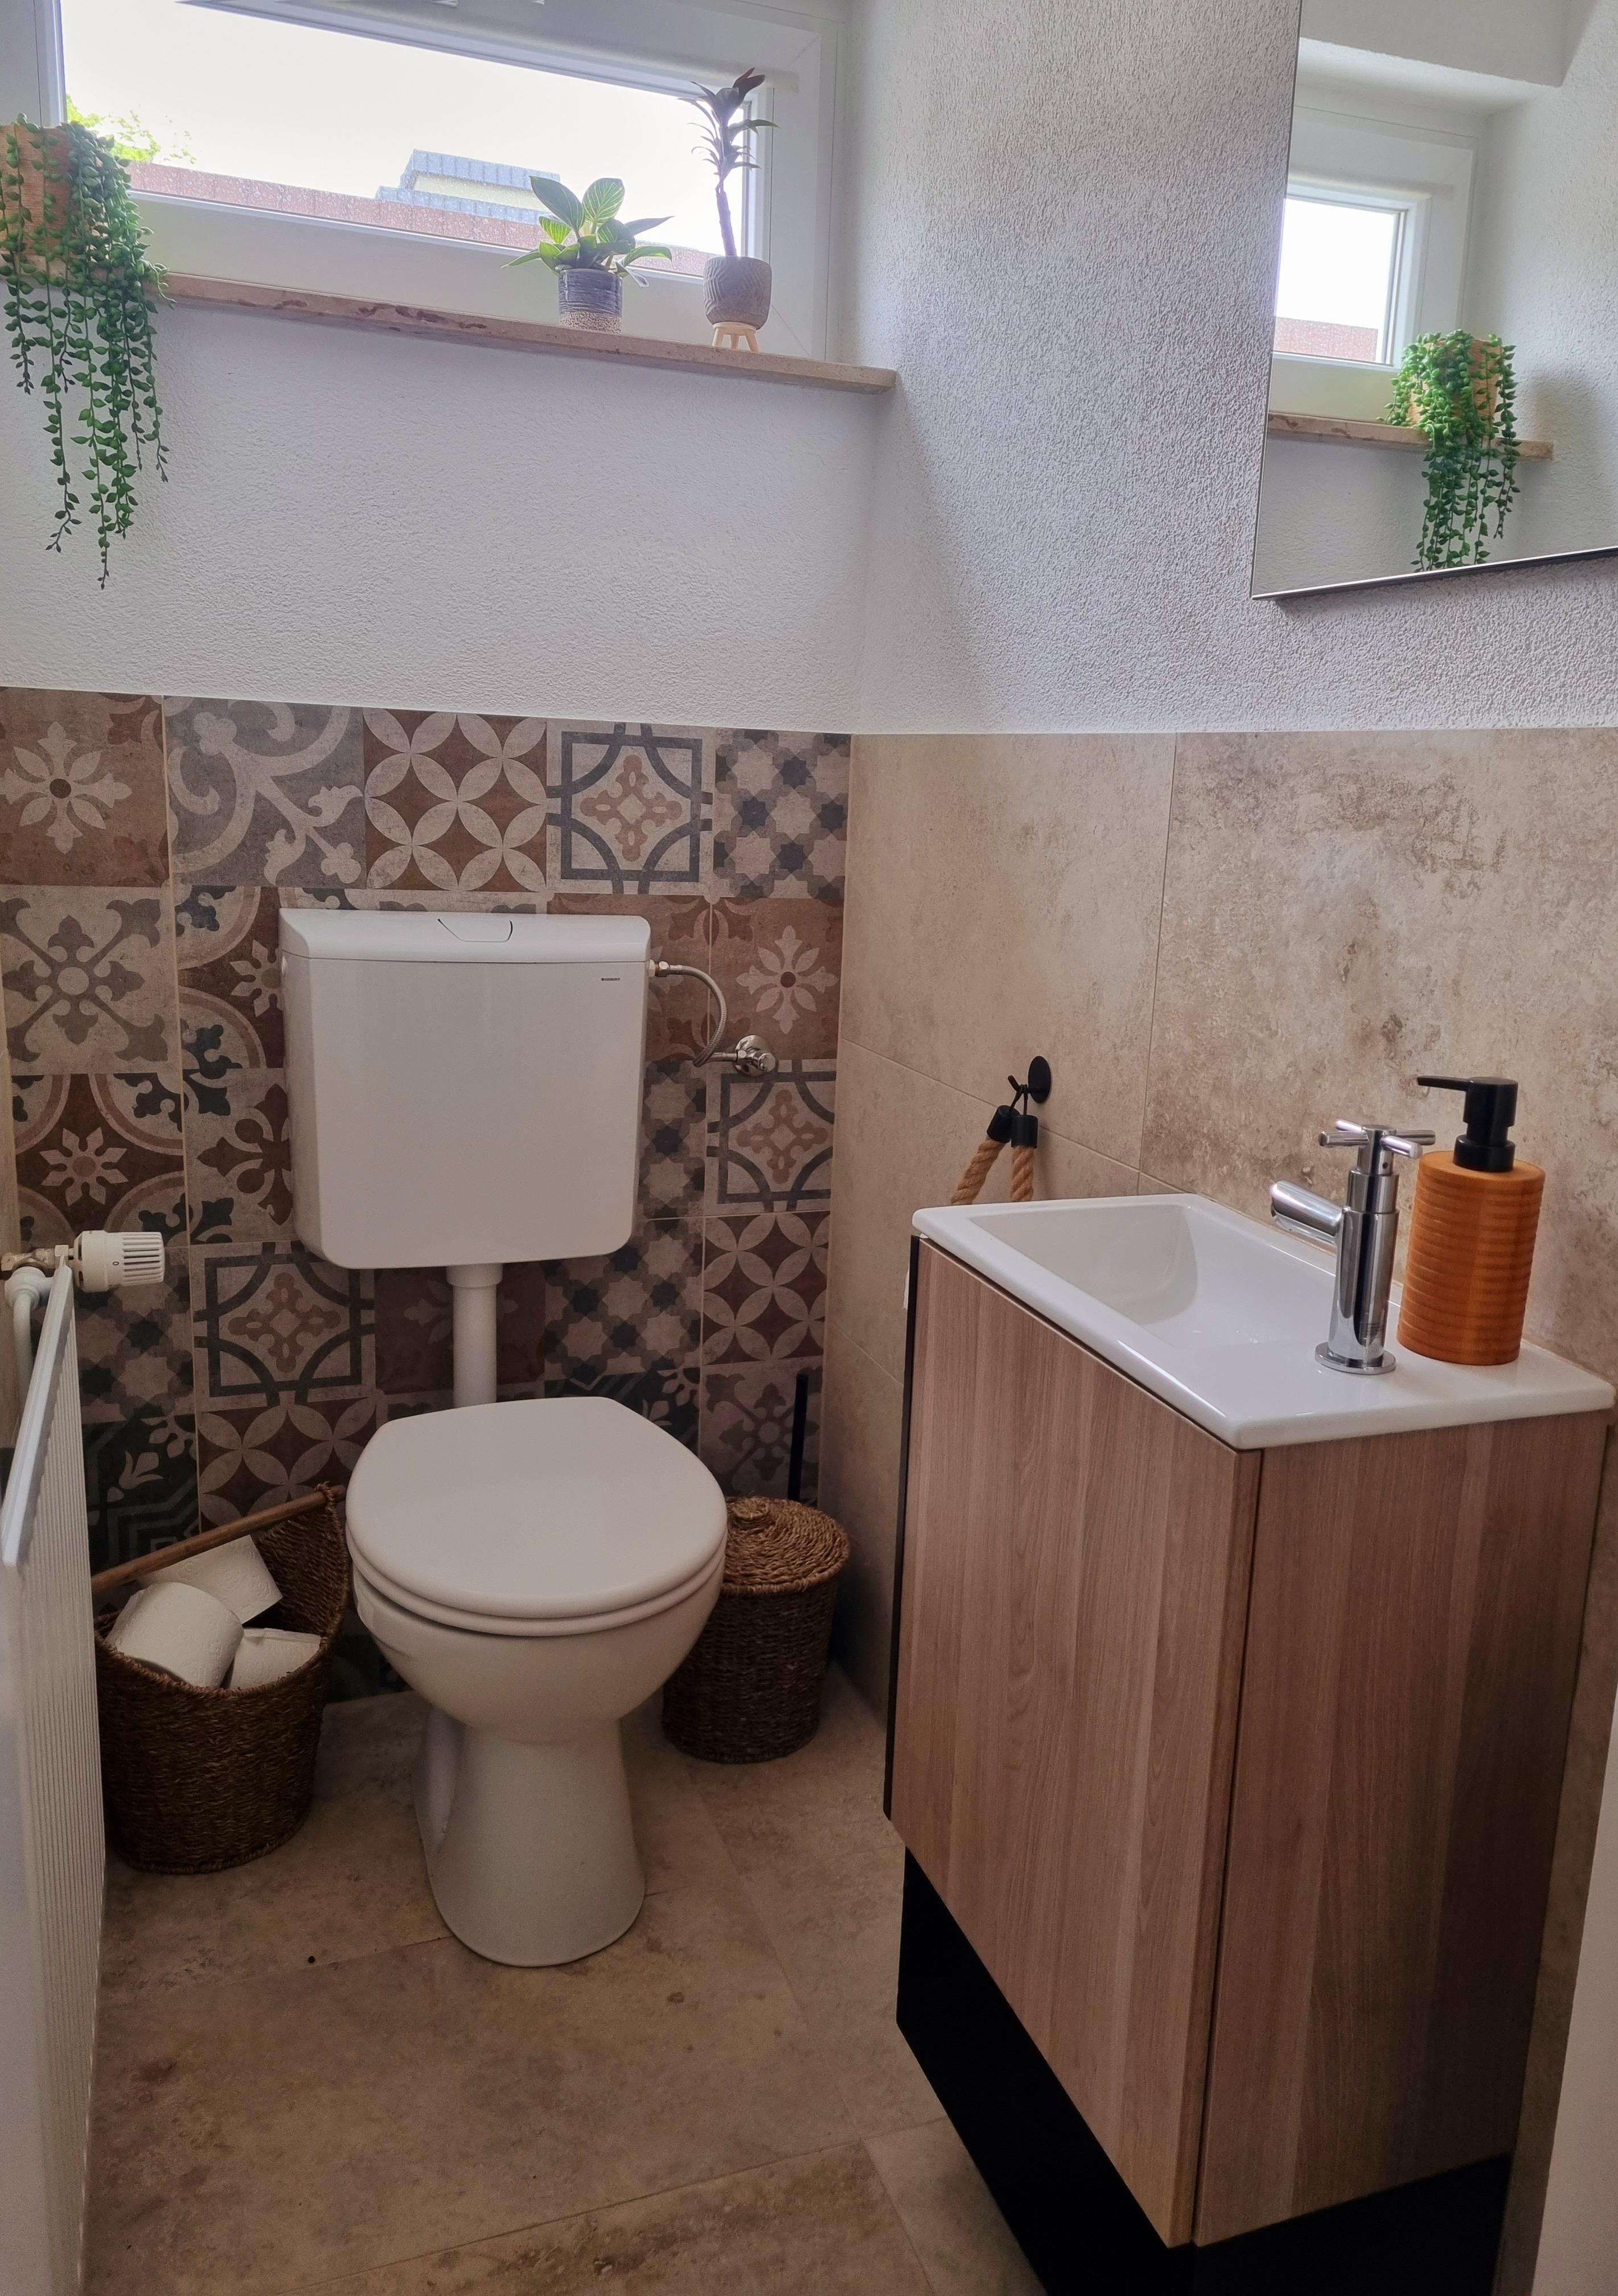 Auch das Gäste WC verdient Liebe zum Detail 😉
#gästewc #interior #renovierung #fliesendesign #fliesen